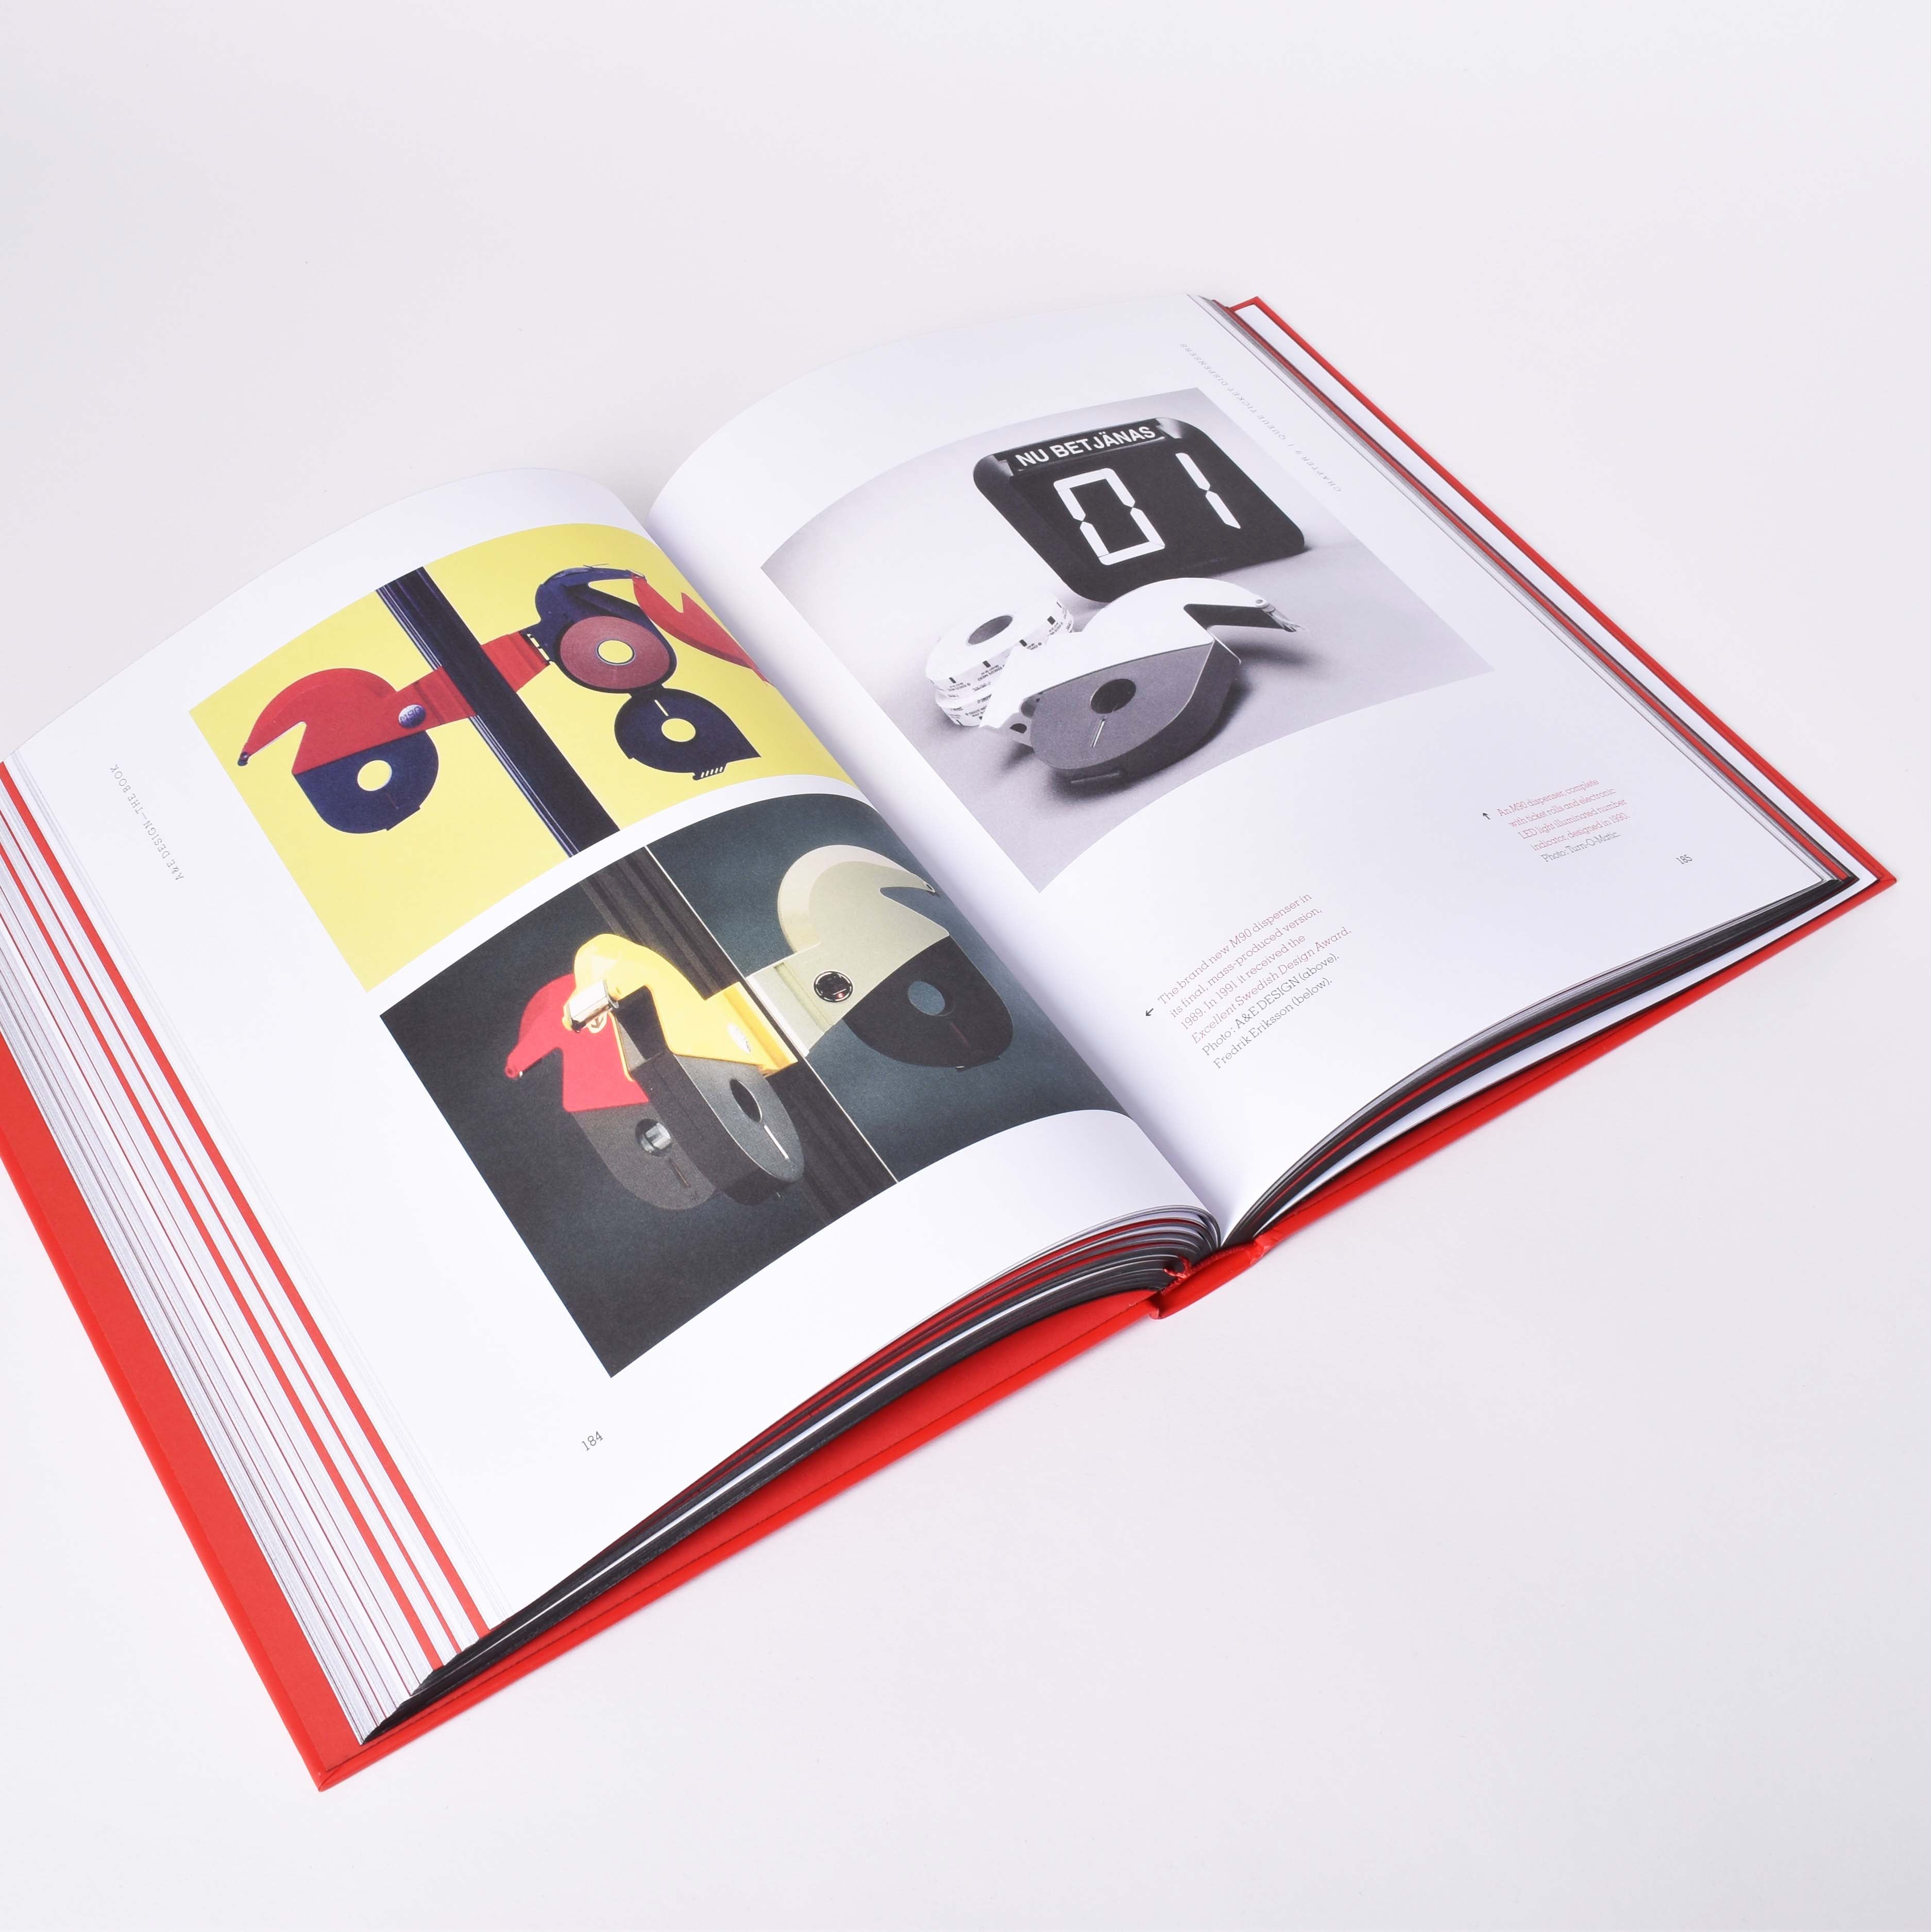 Insida i boken A&E design med bild på nummerlappsautomat